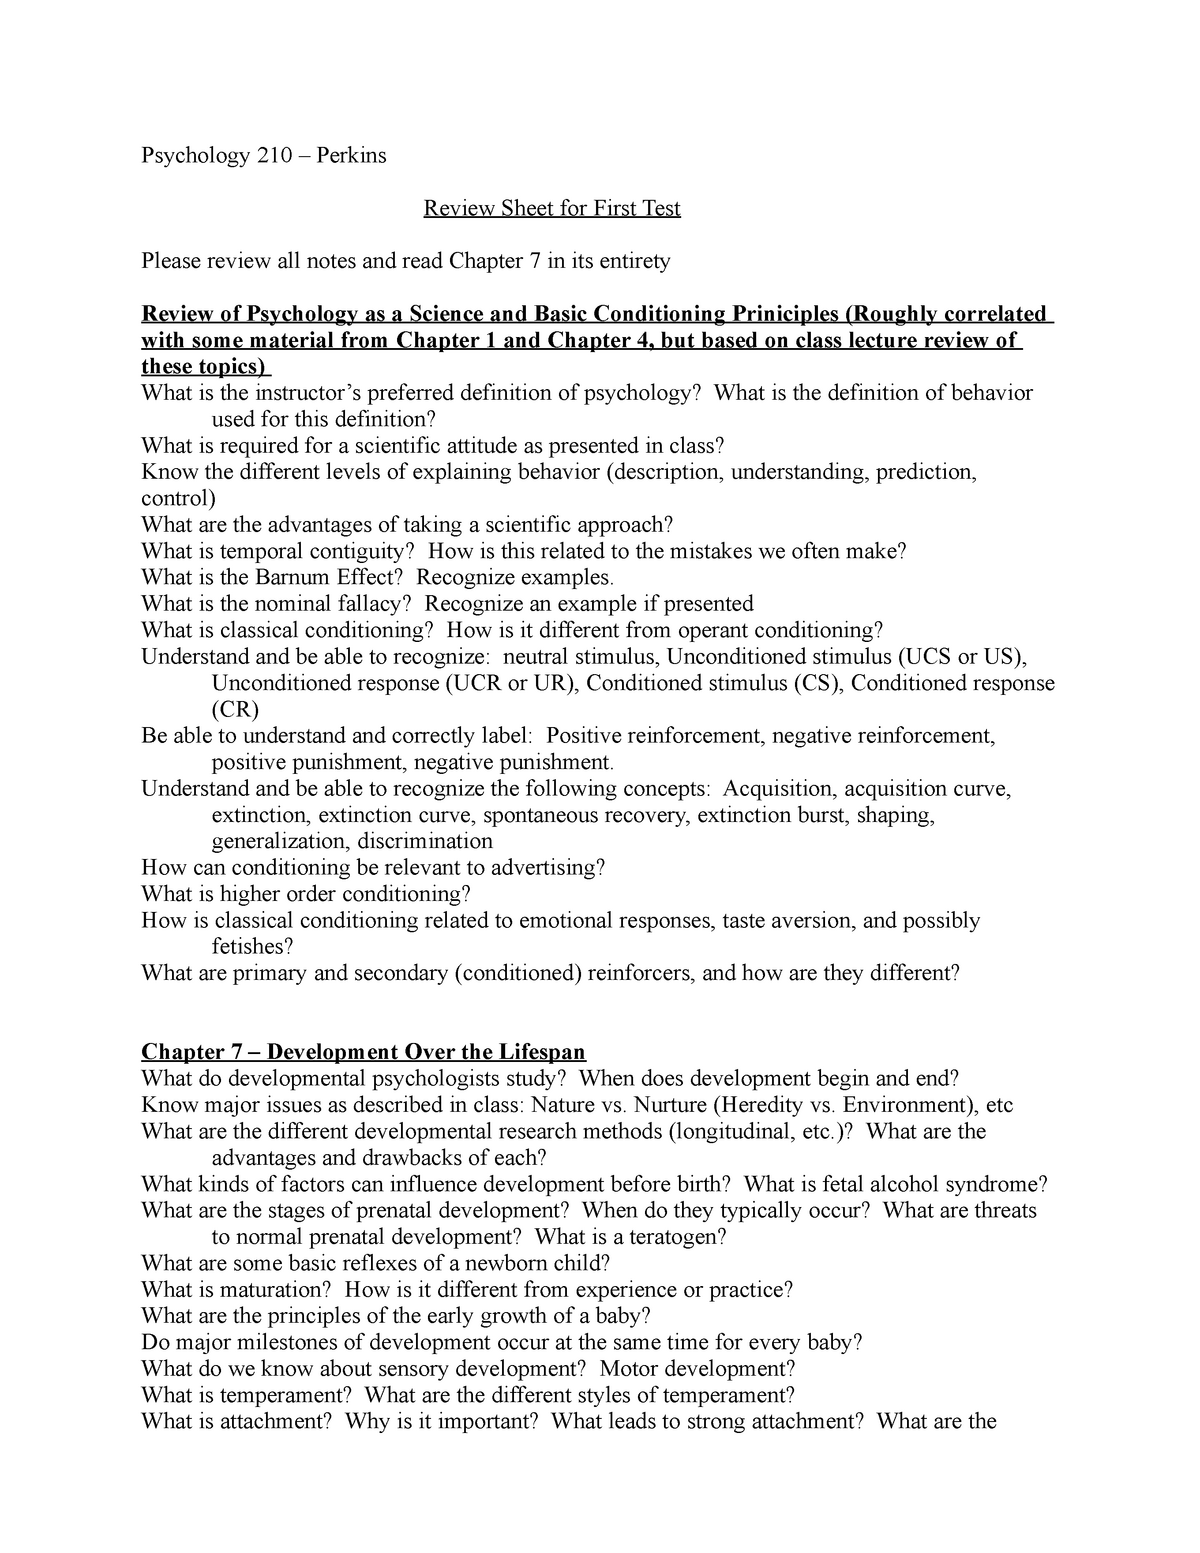 test-1-review-list-perkins-psychology-210-perkins-review-sheet